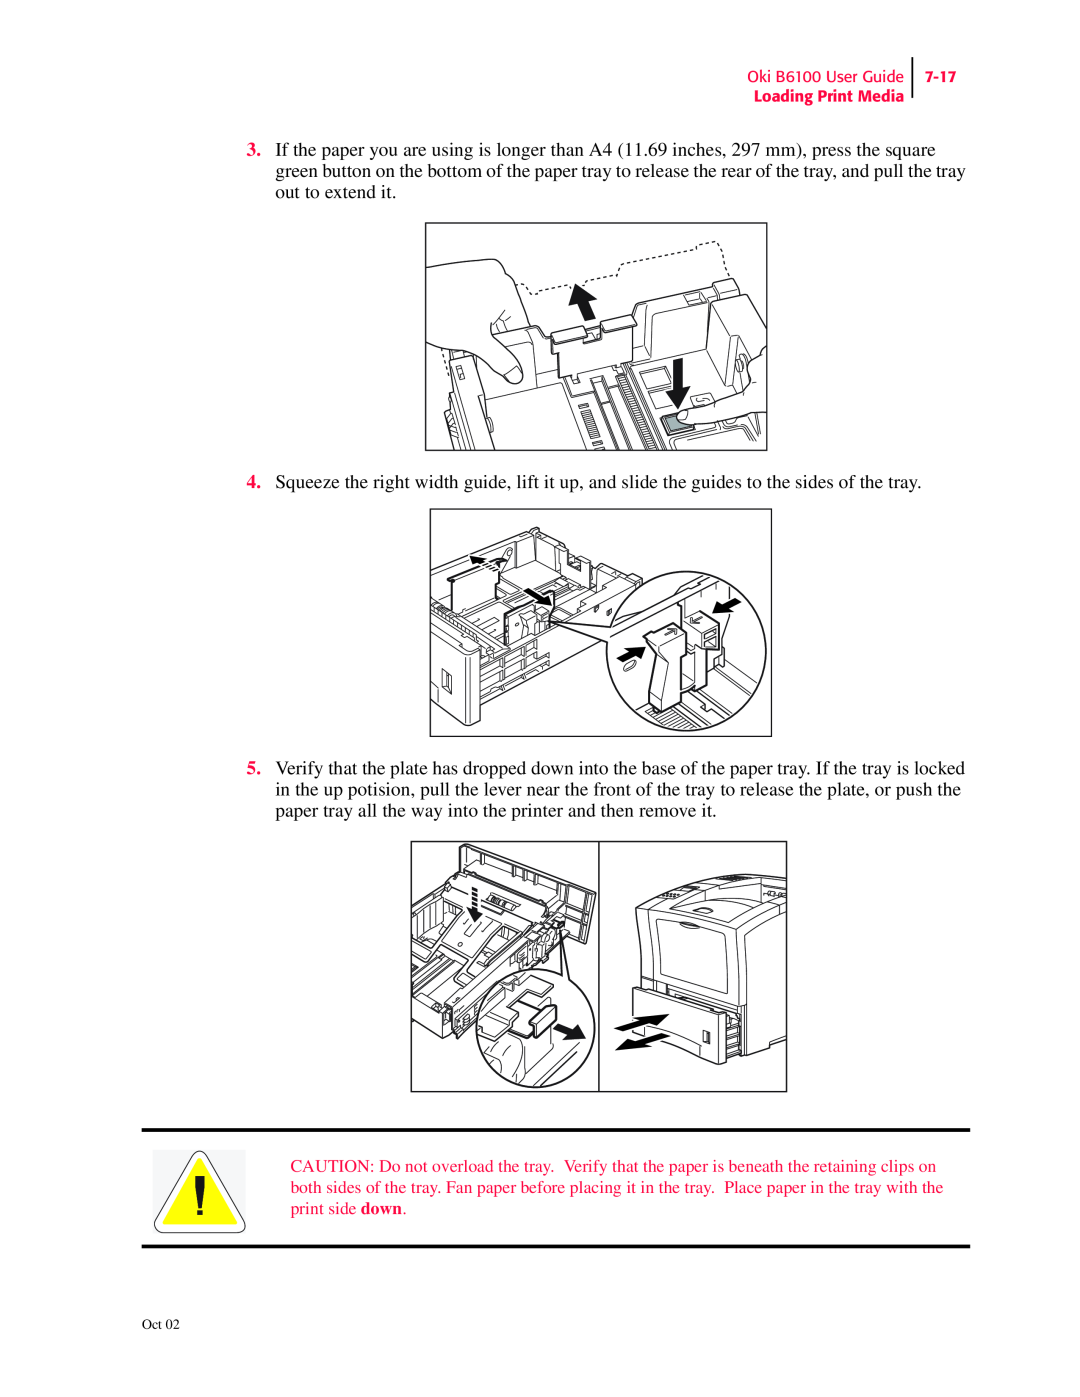 Oki manual Oki B6100 User Guide Loading Print Media, 7-17 